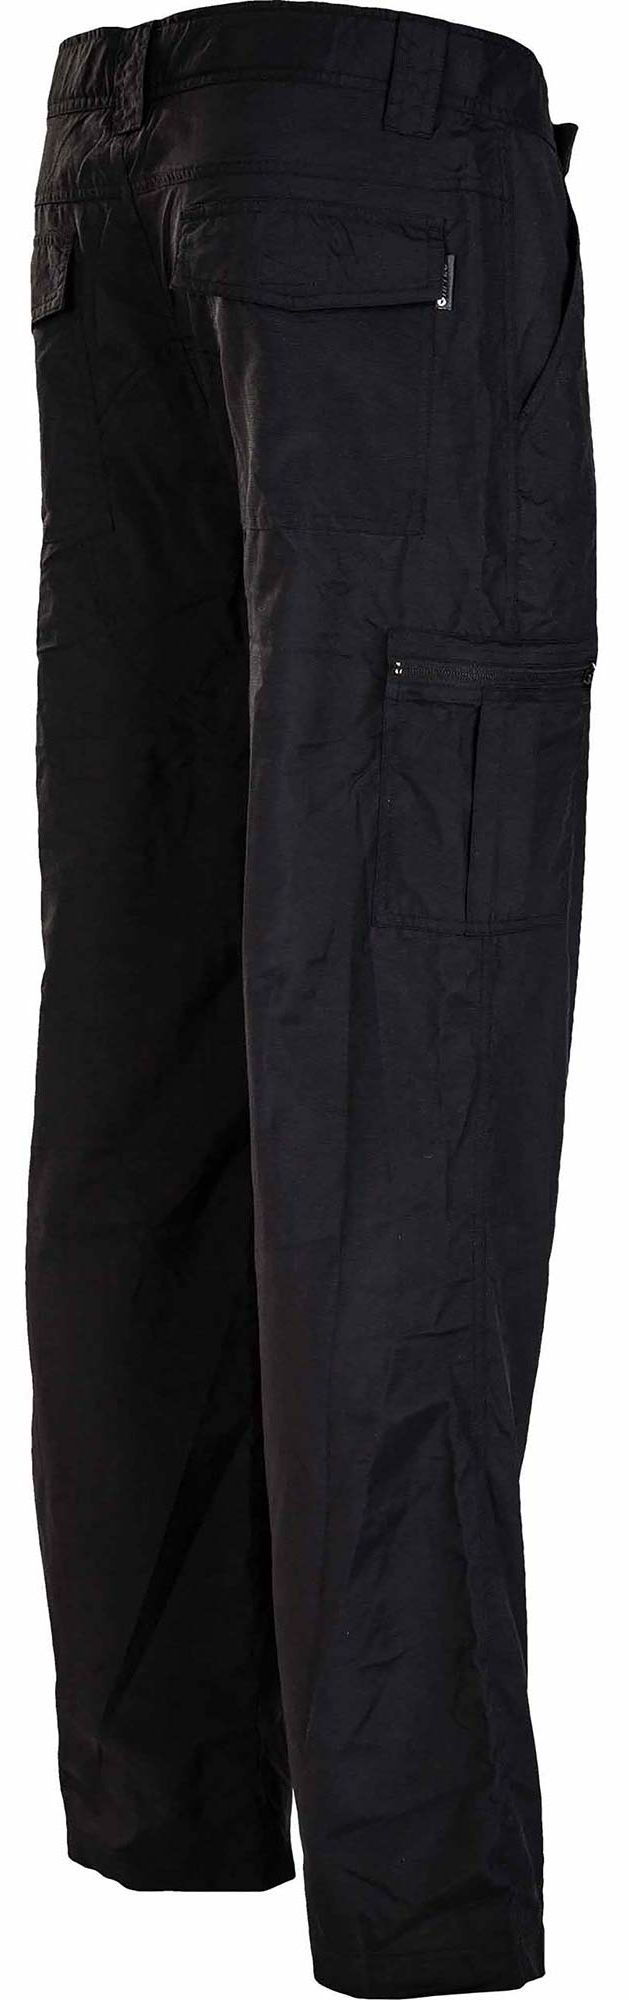 LOBAN OUTDOOR PANTS LIGHT - Pantaloni de exterior pentru bărbați